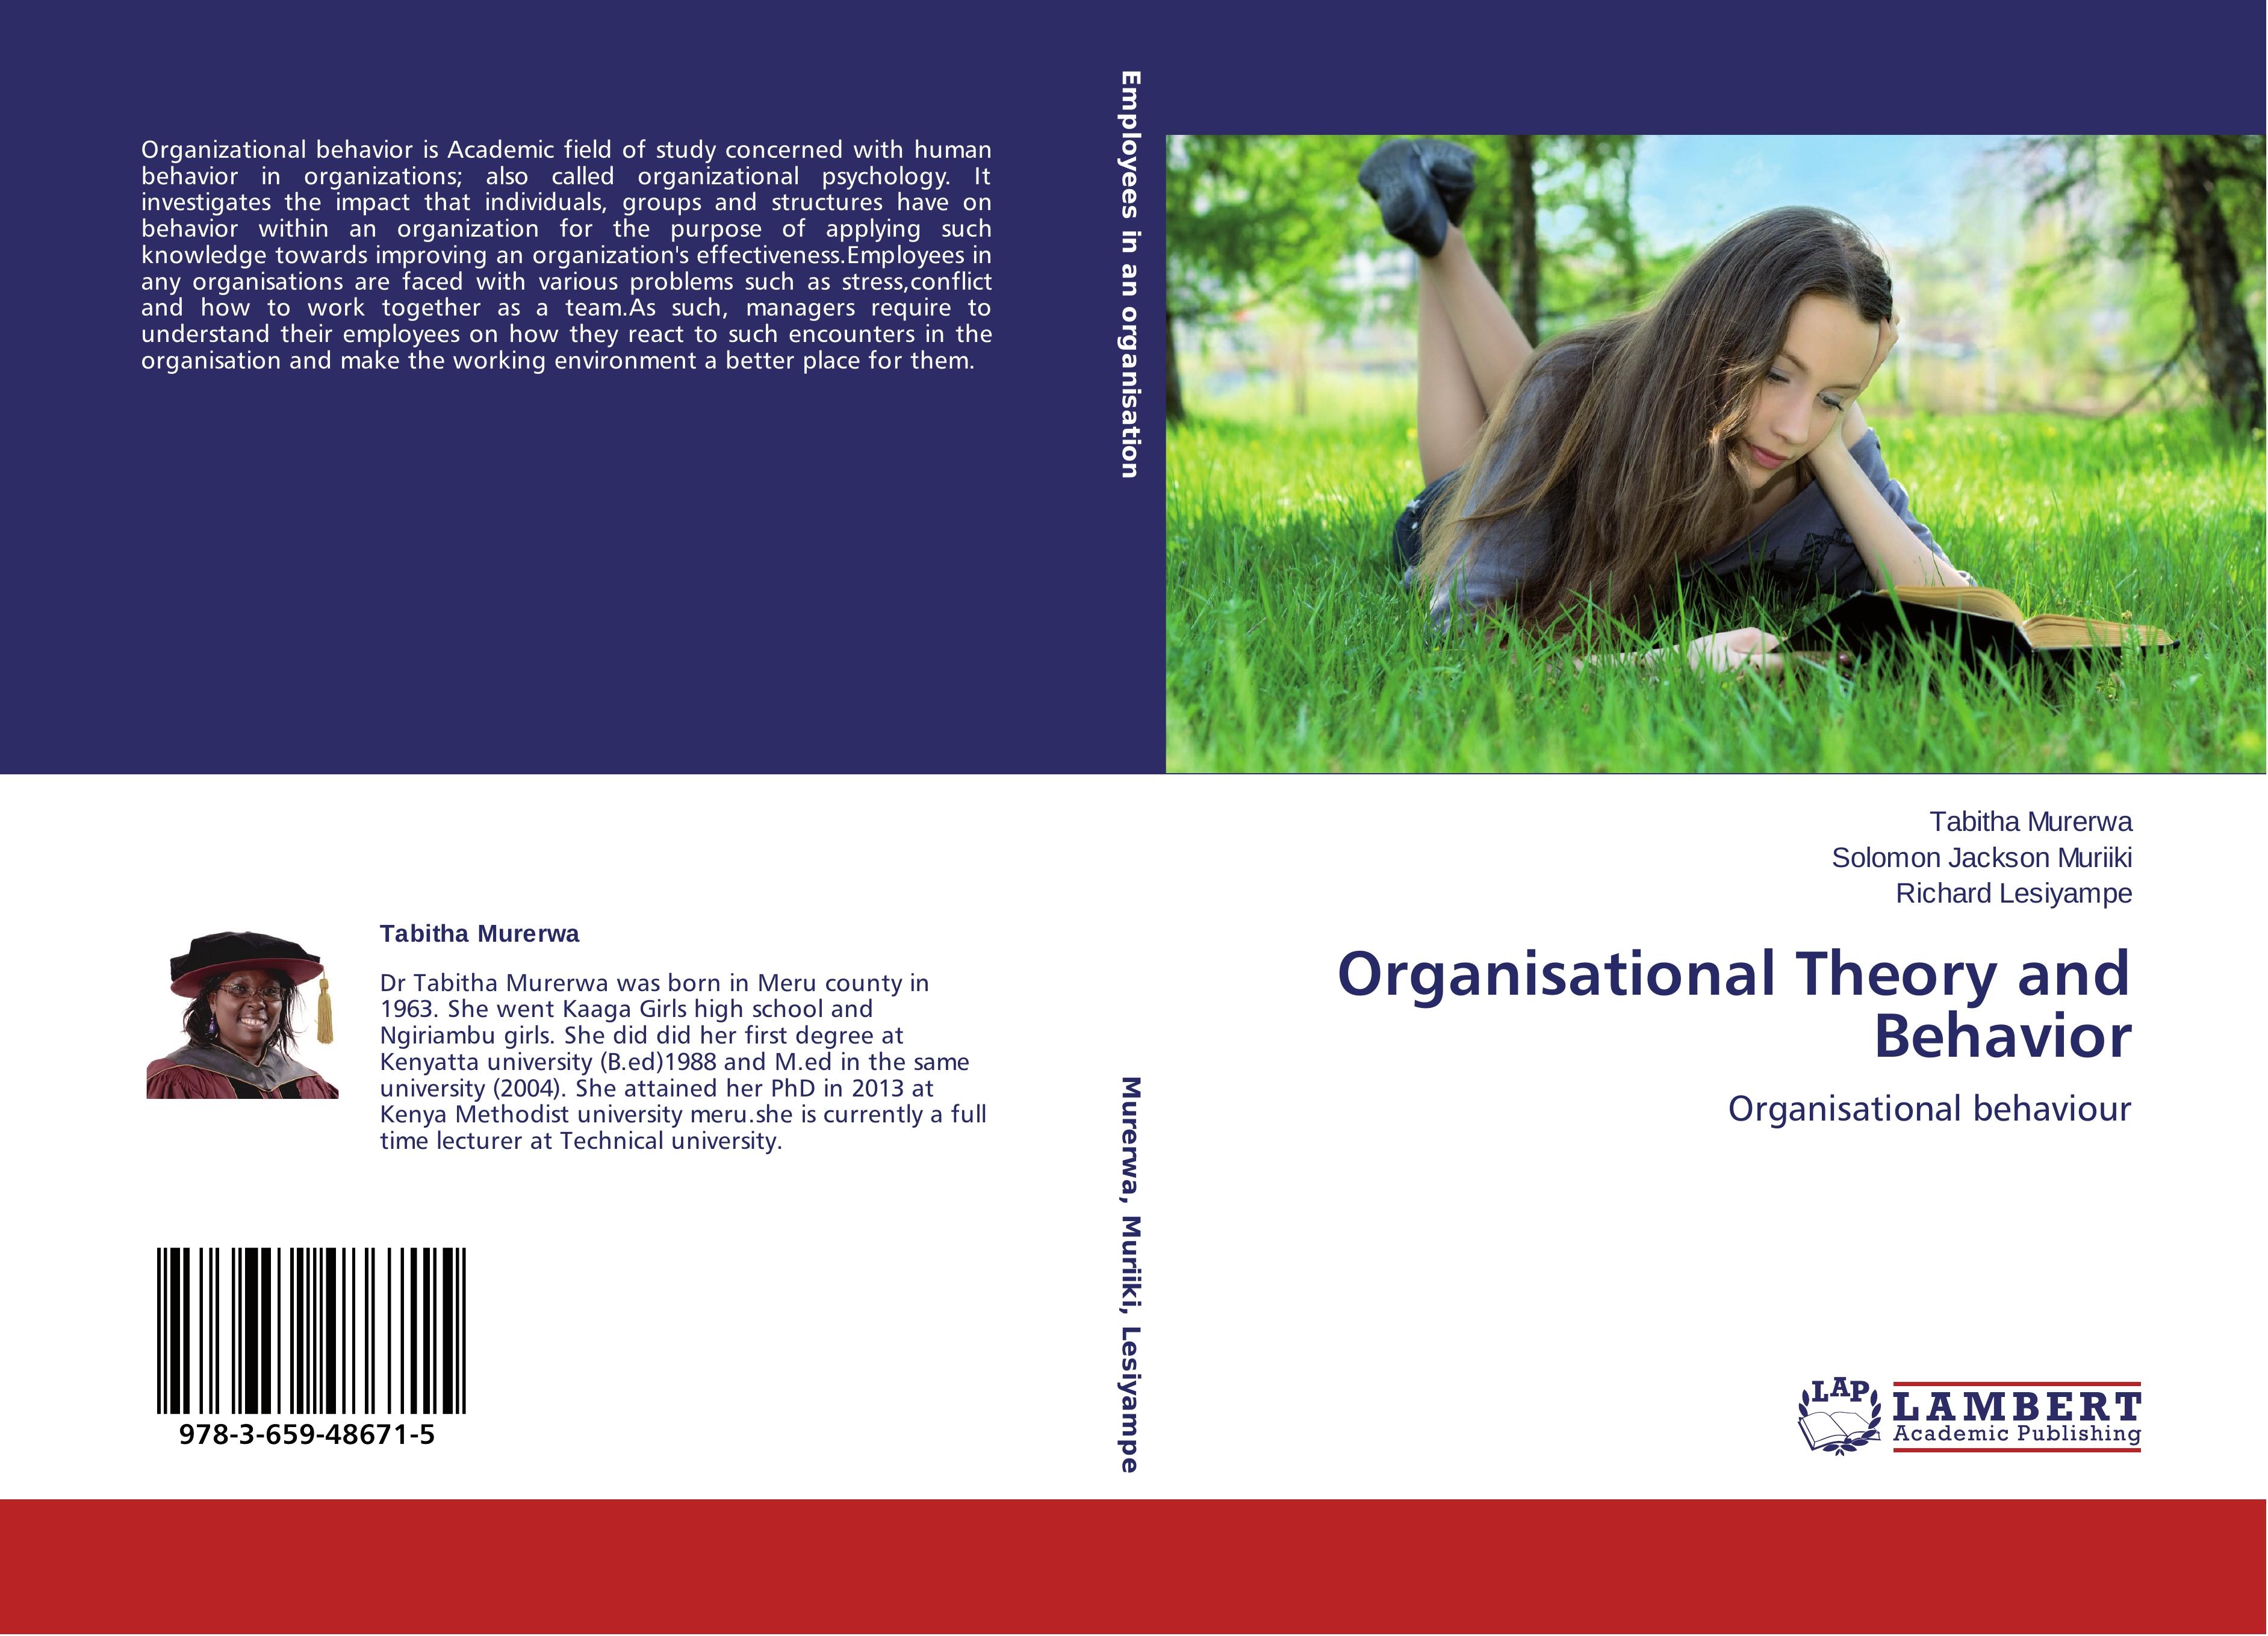 Organisational Theory and Behavior - Tabitha Murerwa Solomon Jackson Muriiki Richard Lesiyampe